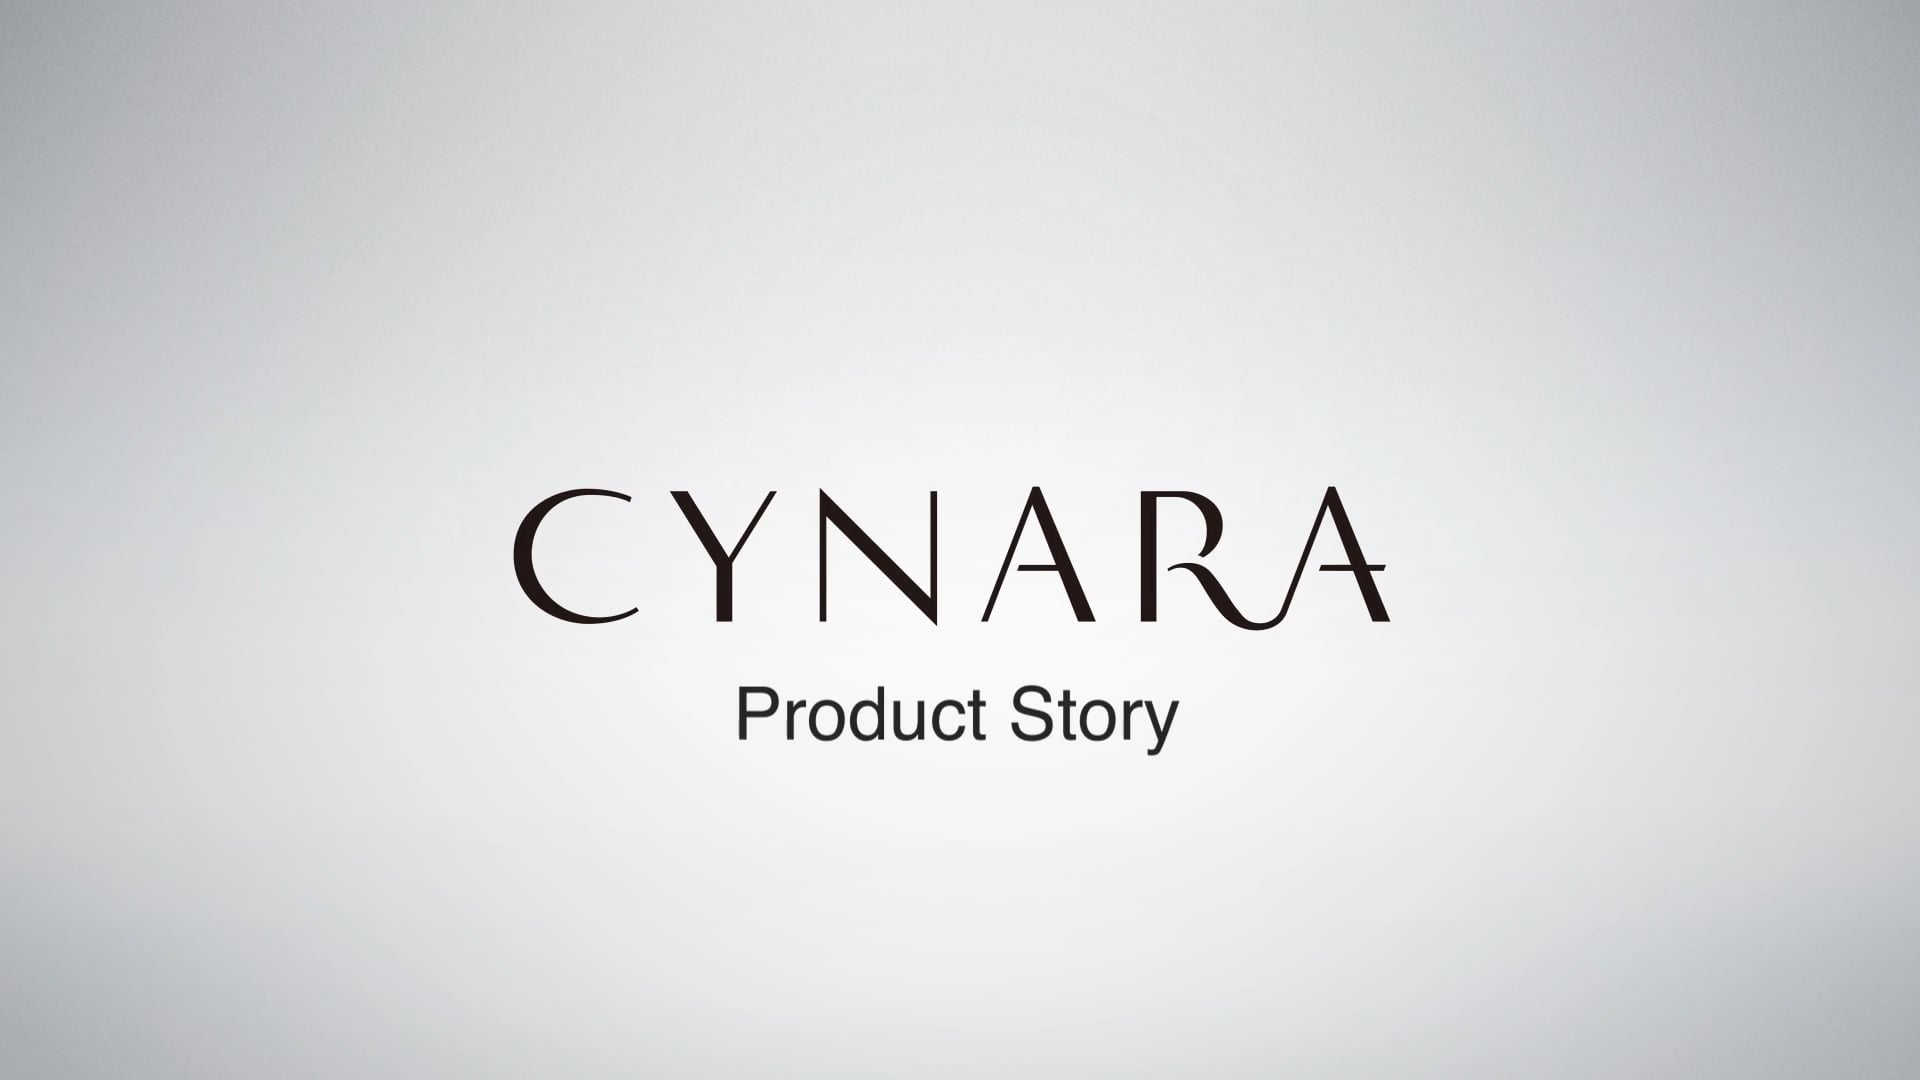 CYNARA Product Story